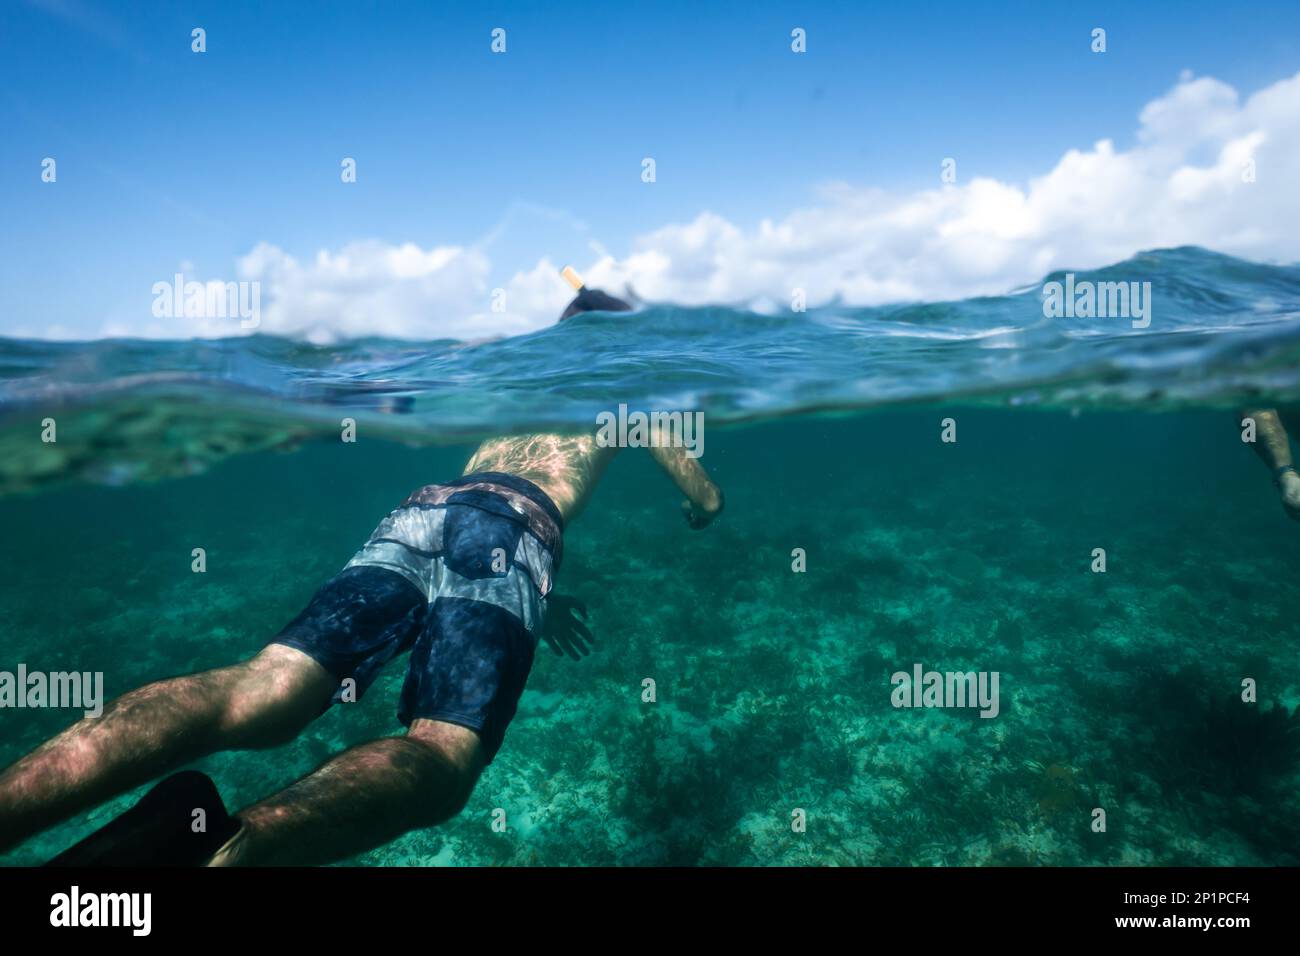 Mezza foto subacquea, o foto a livello diviso, di un uomo che fa snorkeling nell'oceano turchese nelle Isole Turks e Caicos, Caraibi, sopra una barriera corallina. Foto Stock